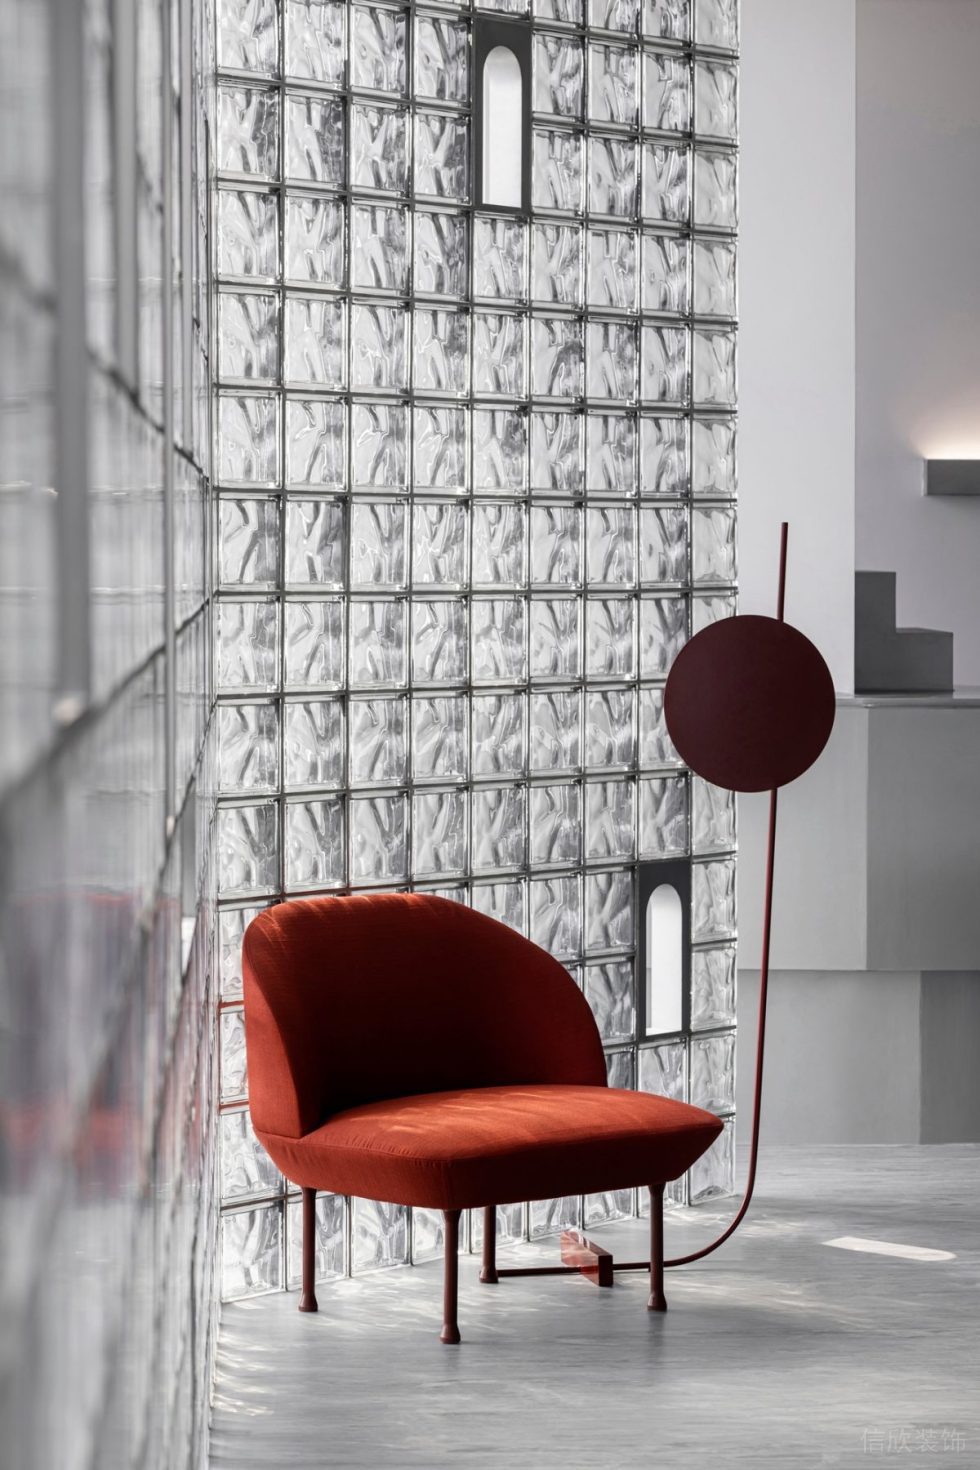 长虹科技大厦现代主义办公室装修方案 红色造型椅子